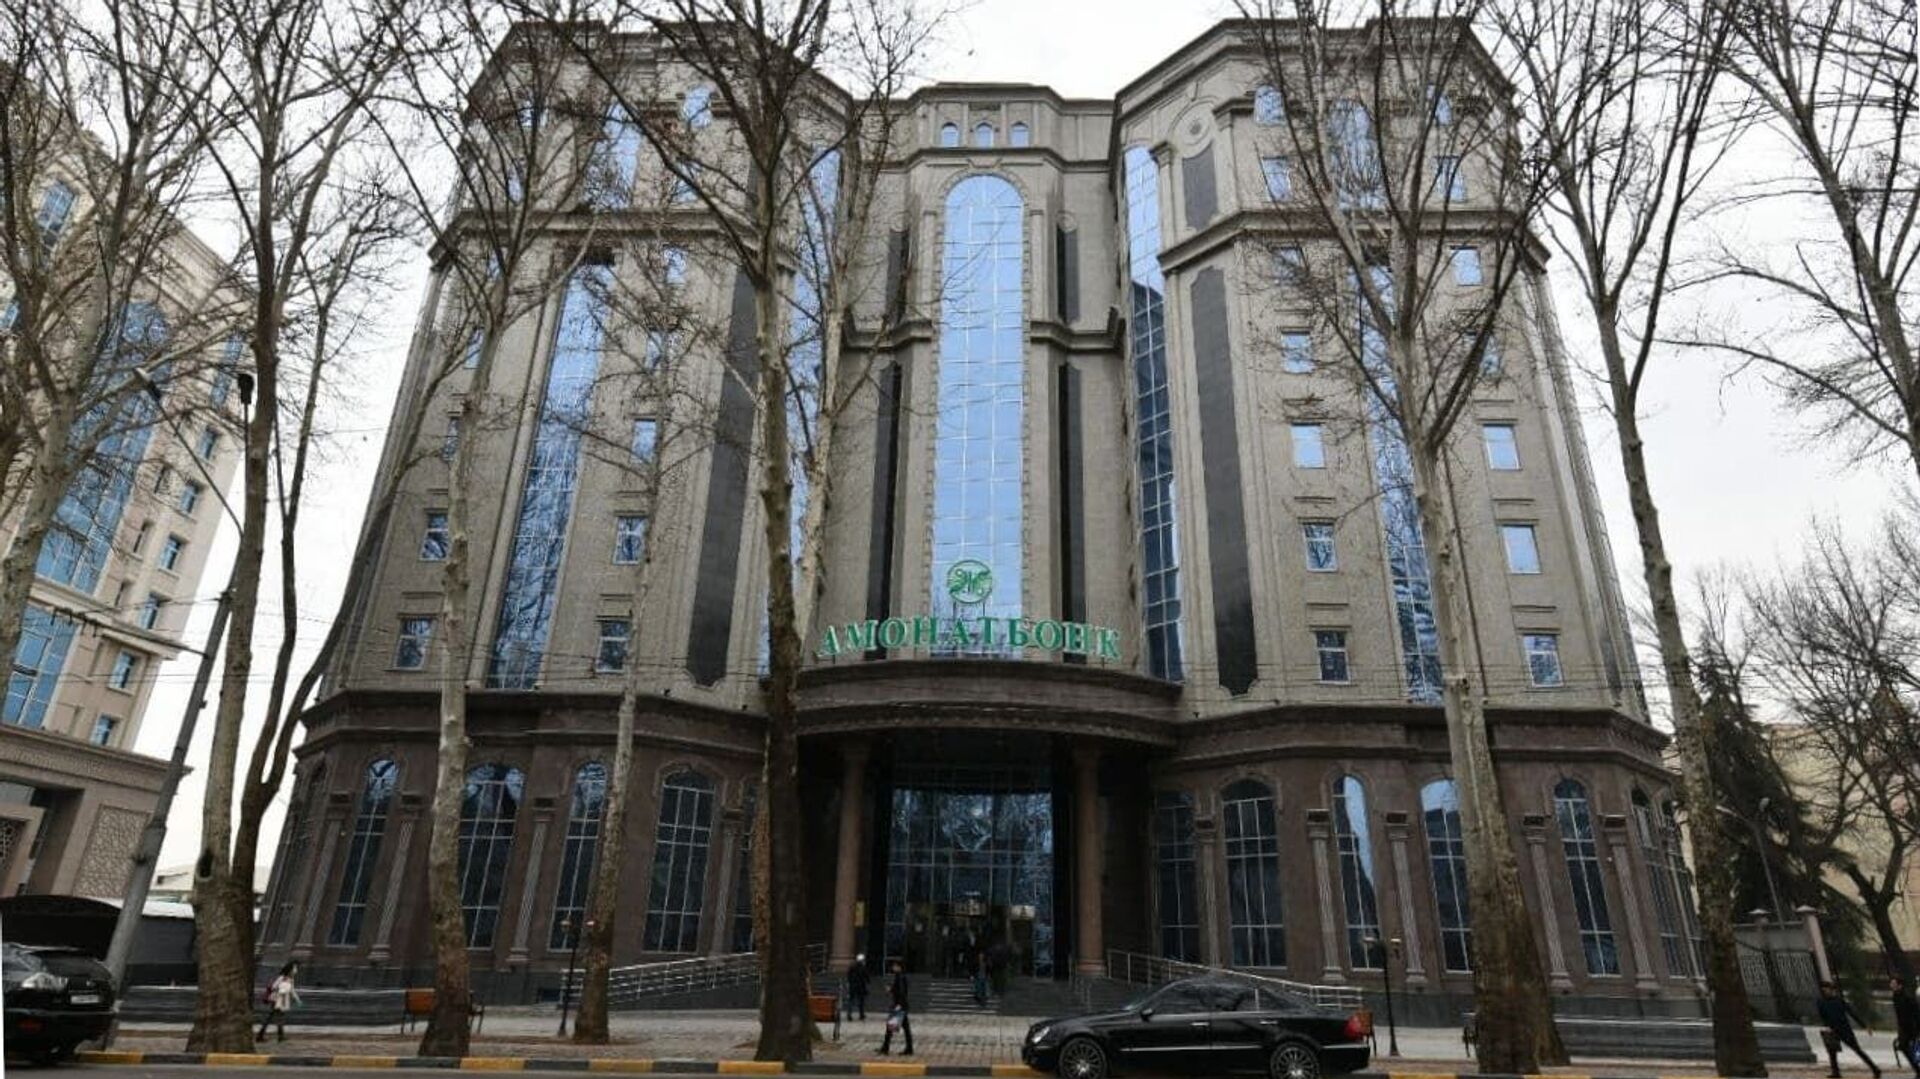 Здание Амонатбанка в Душанбе - Sputnik Таджикистан, 1920, 02.07.2021